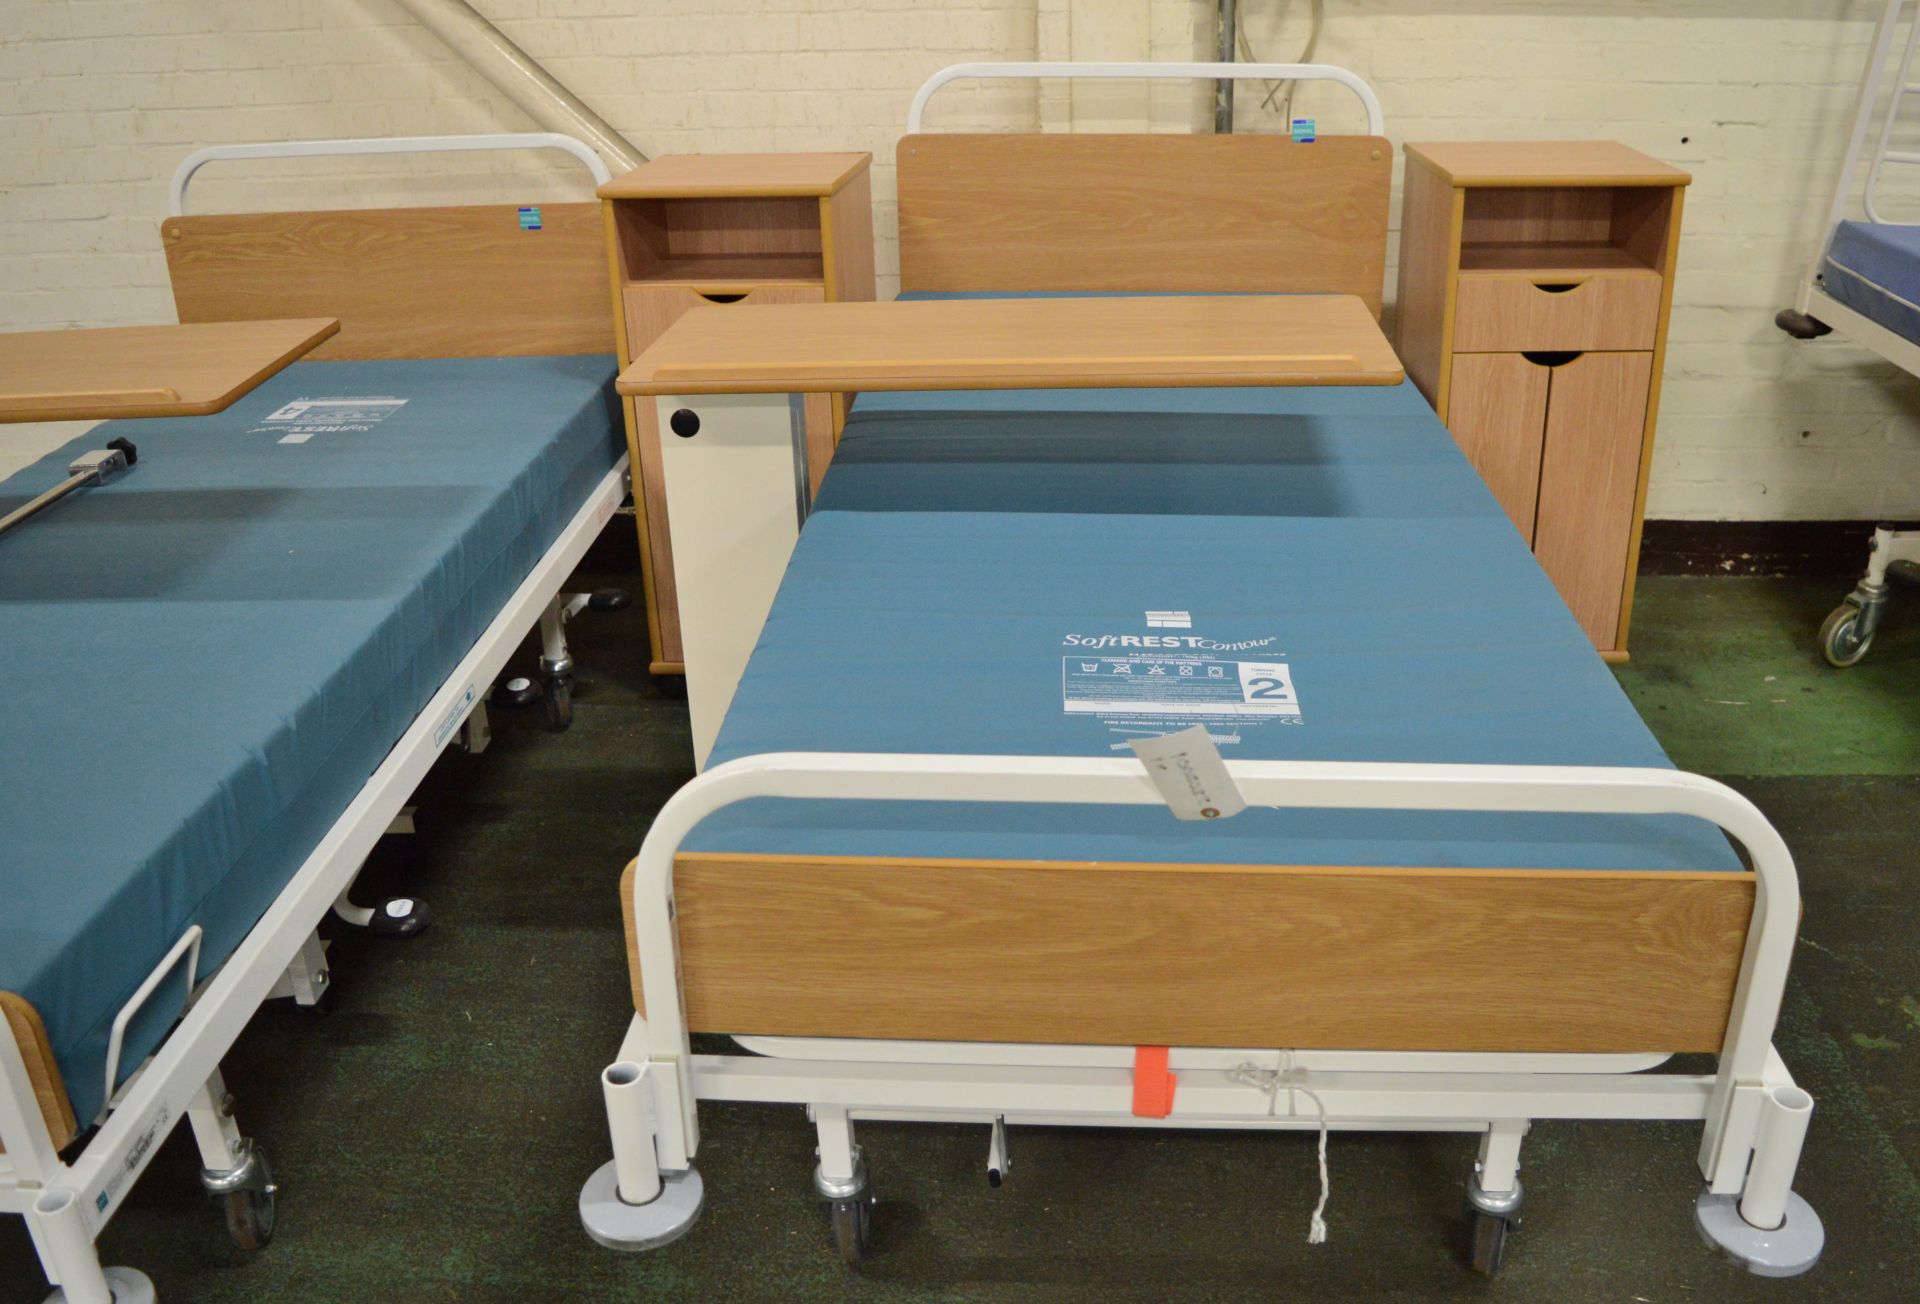 2x Hospital Bed & Furniture Sets. - Image 3 of 3